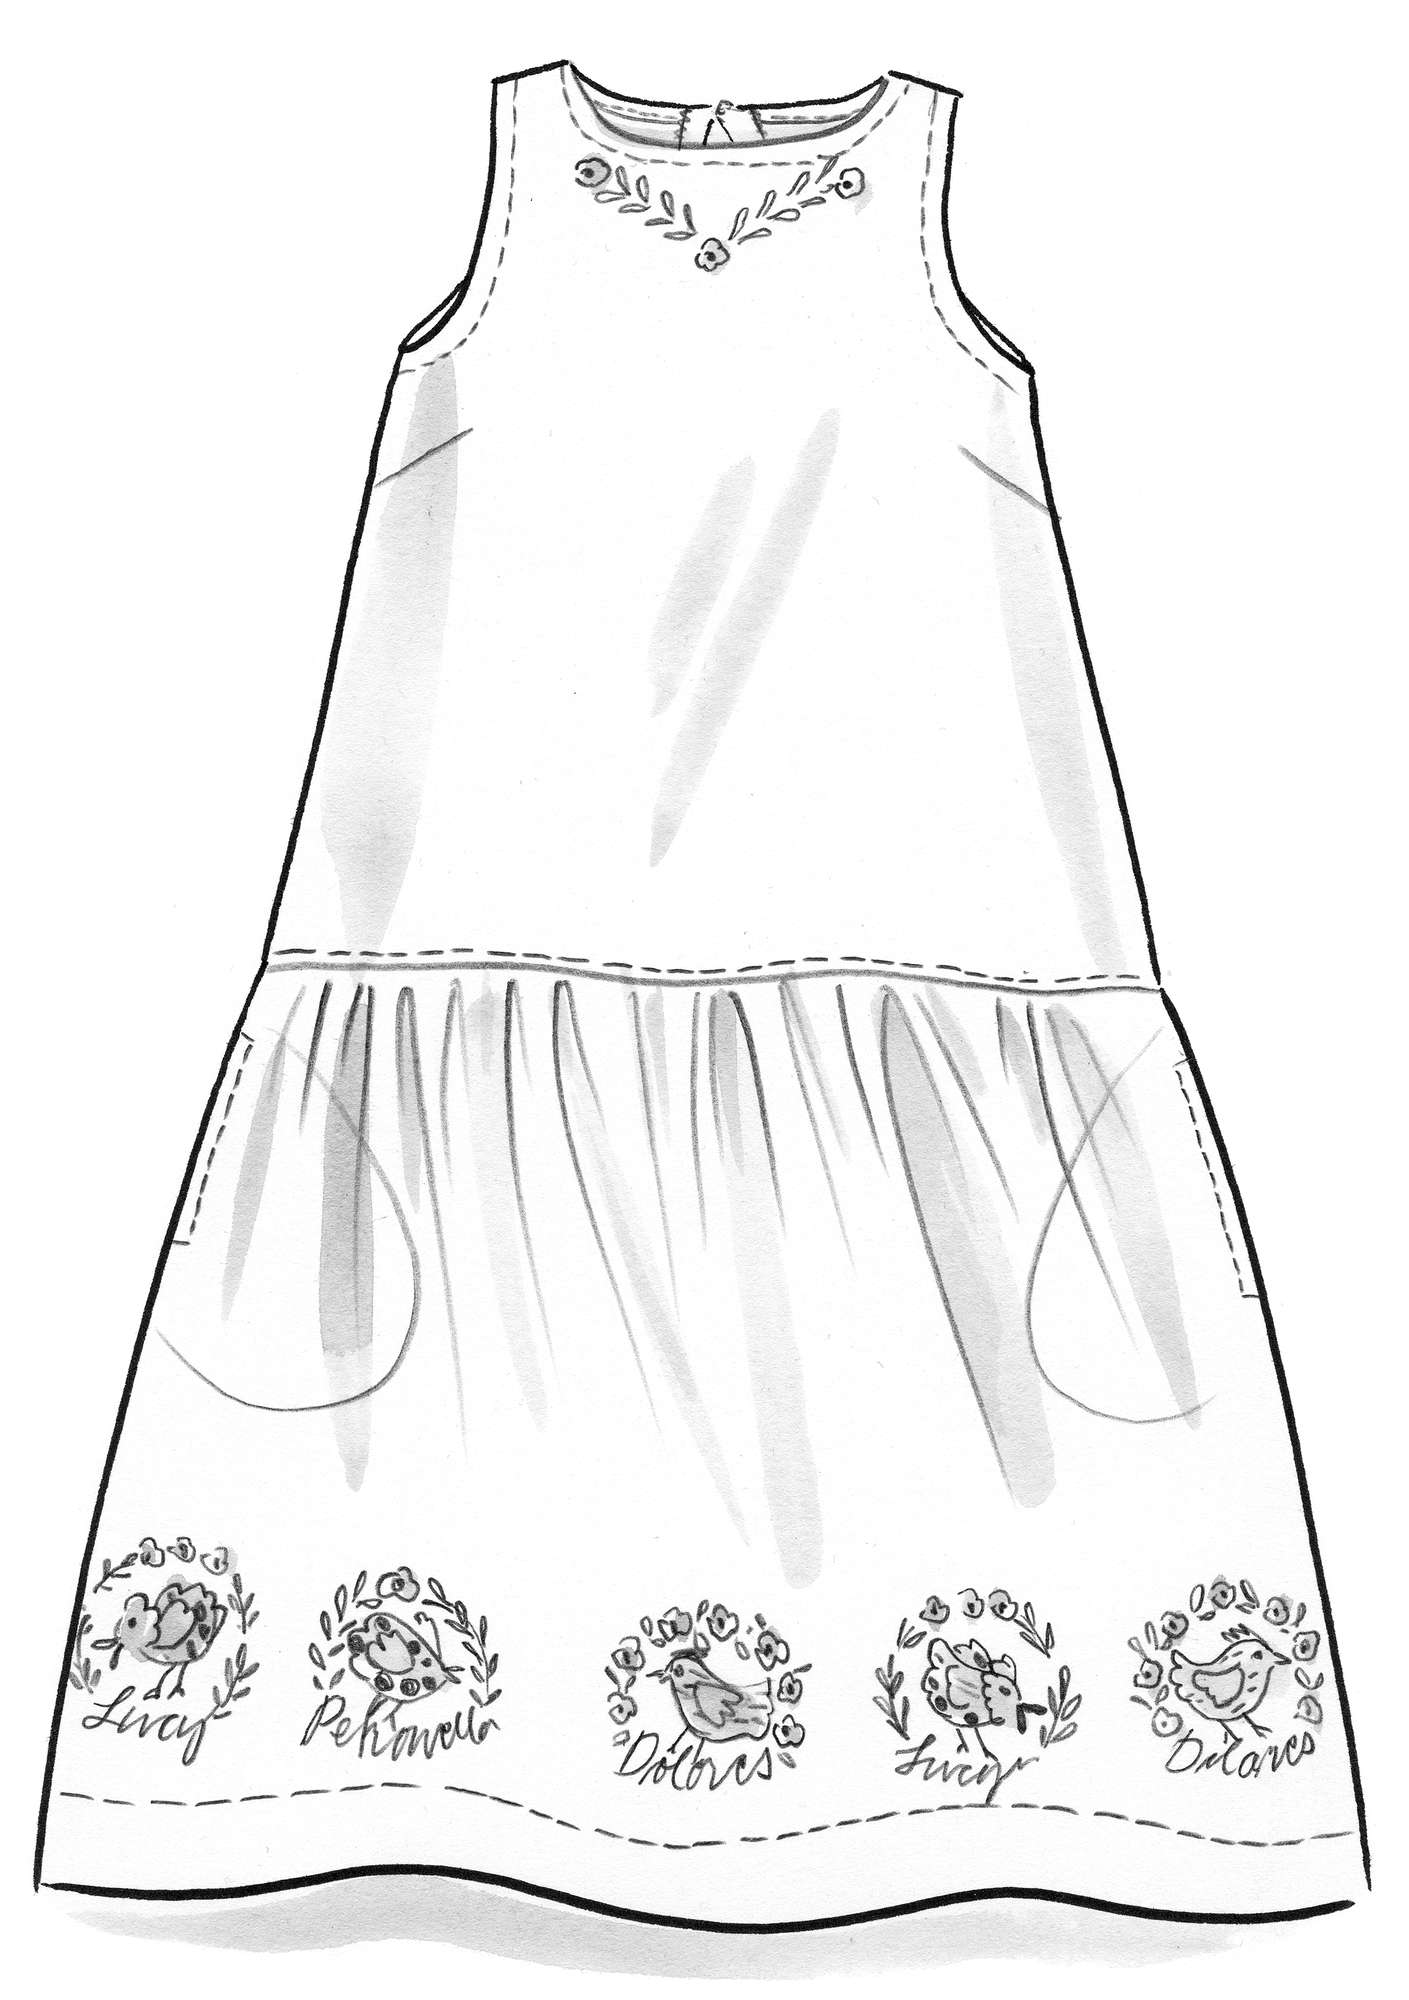 Vevd kjole «Petronella» i økologisk bomull / lin